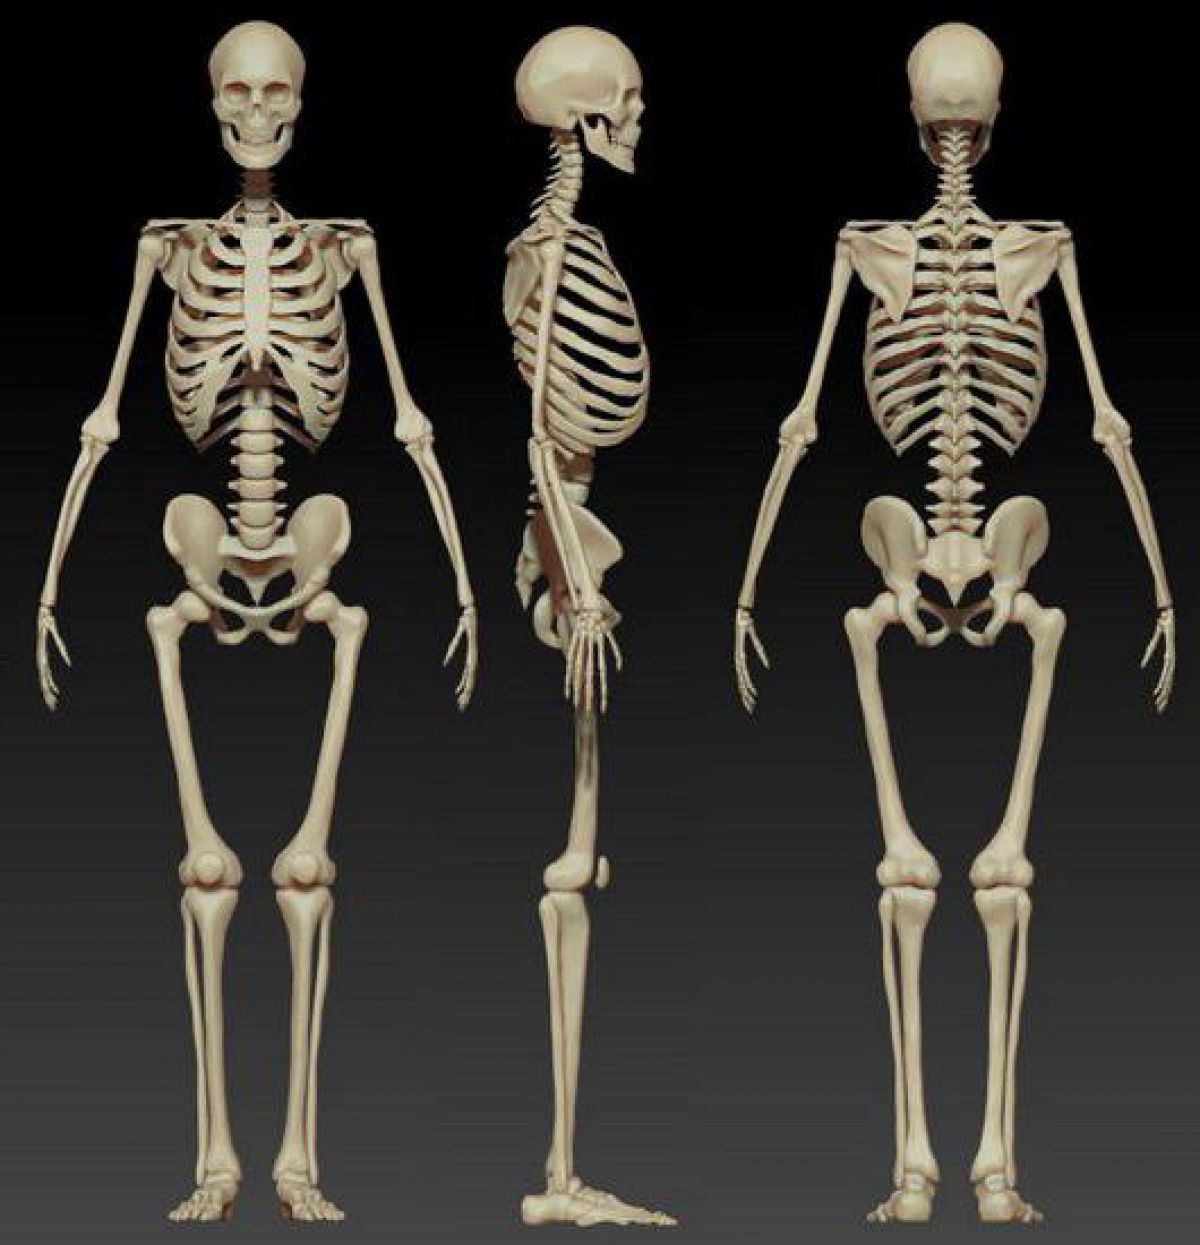 структура кости фото